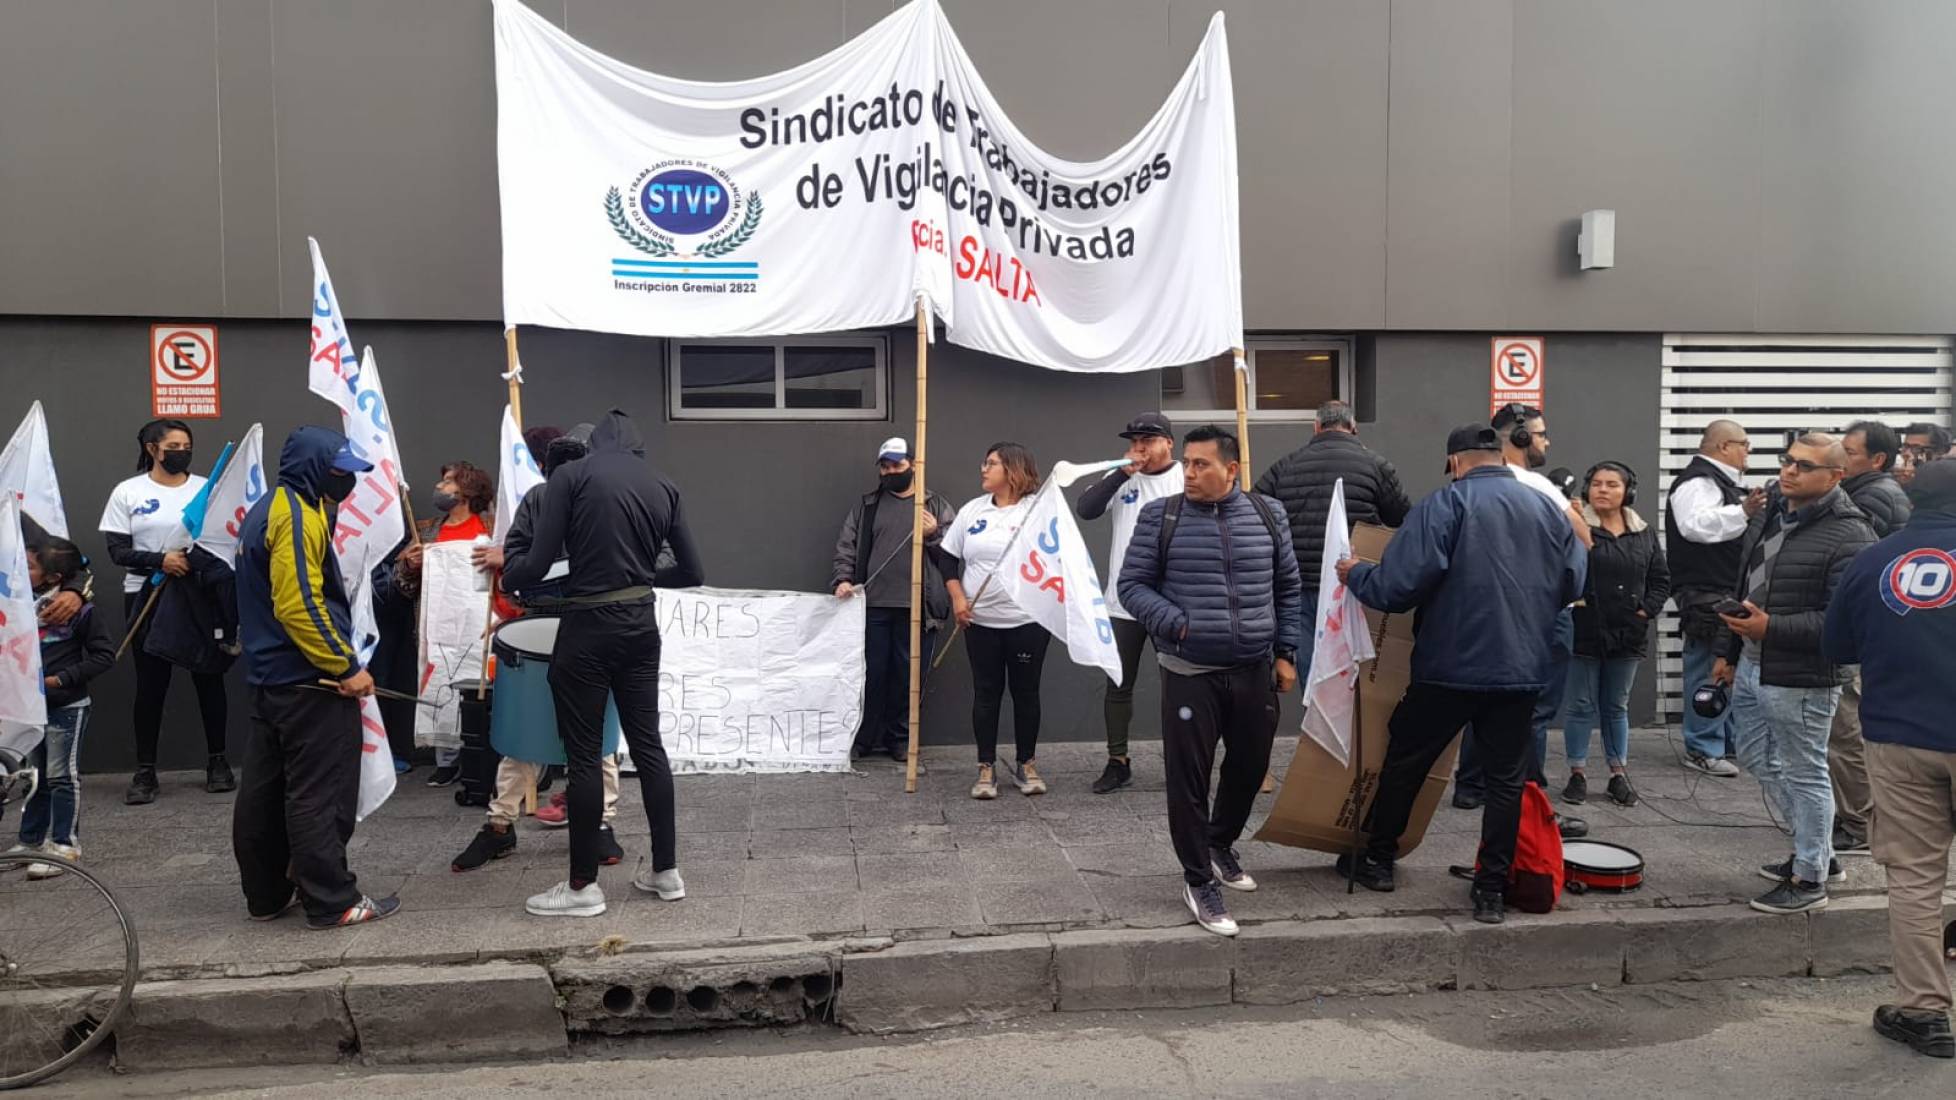 La vigilancia privada en alerta: trabajadores protestan por mejores condiciones laborales